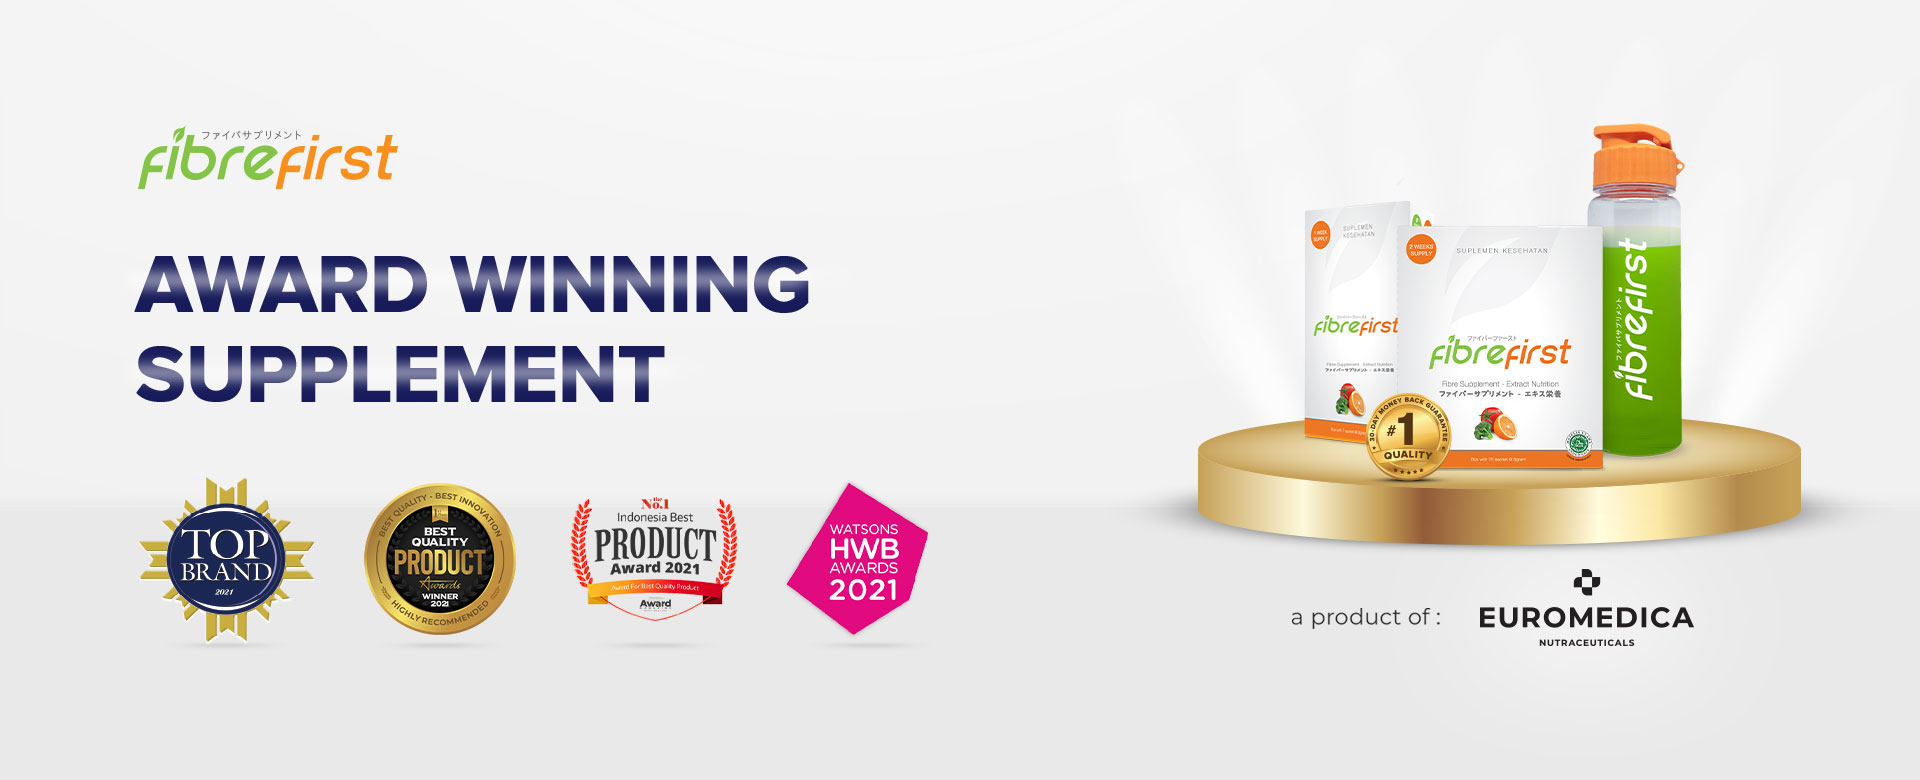 FibreFirst Top Brand Award 2021